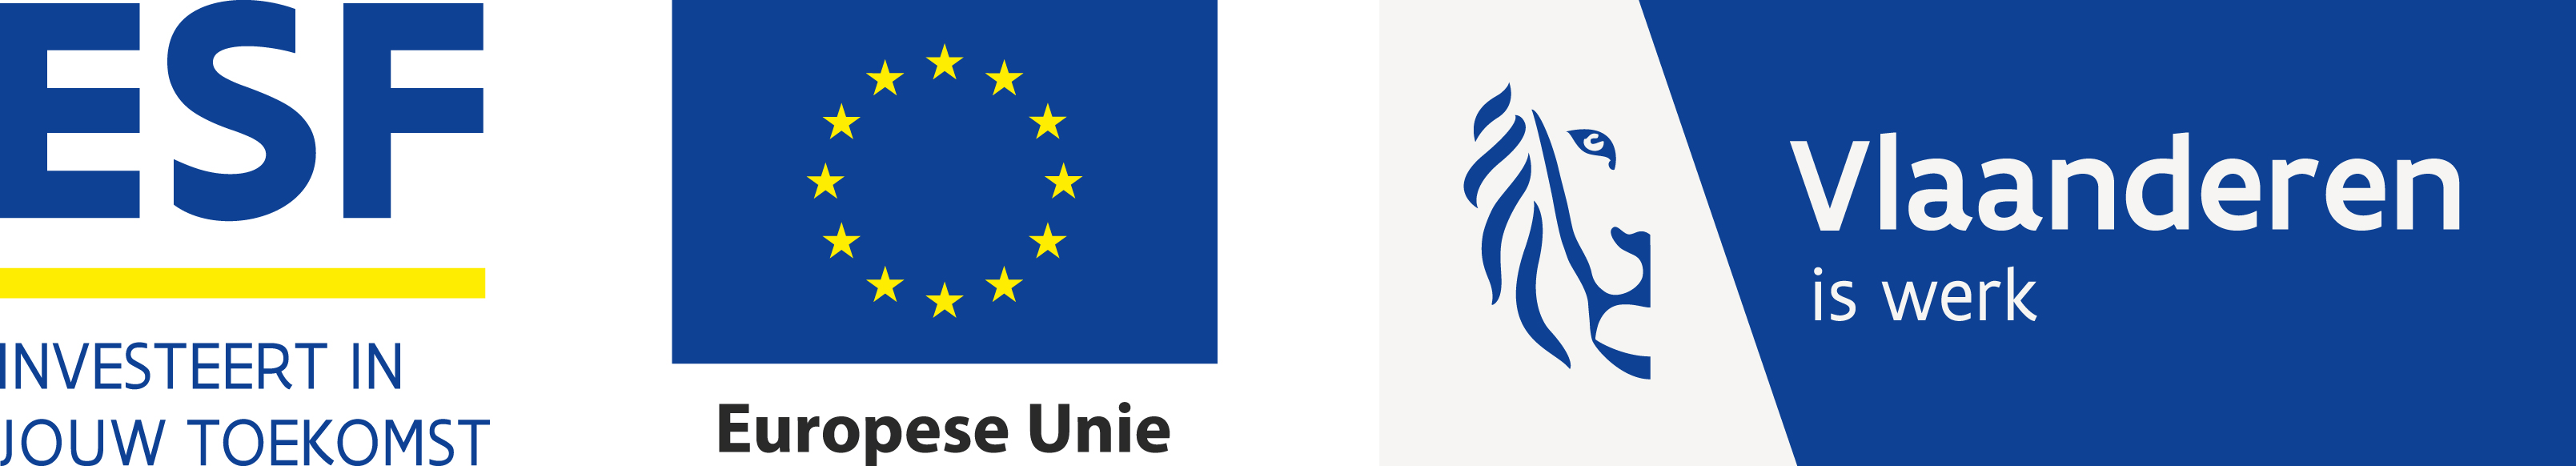 ESF - Investeert in jouw toekomst; Europese Unie; Vlaanderen is werk